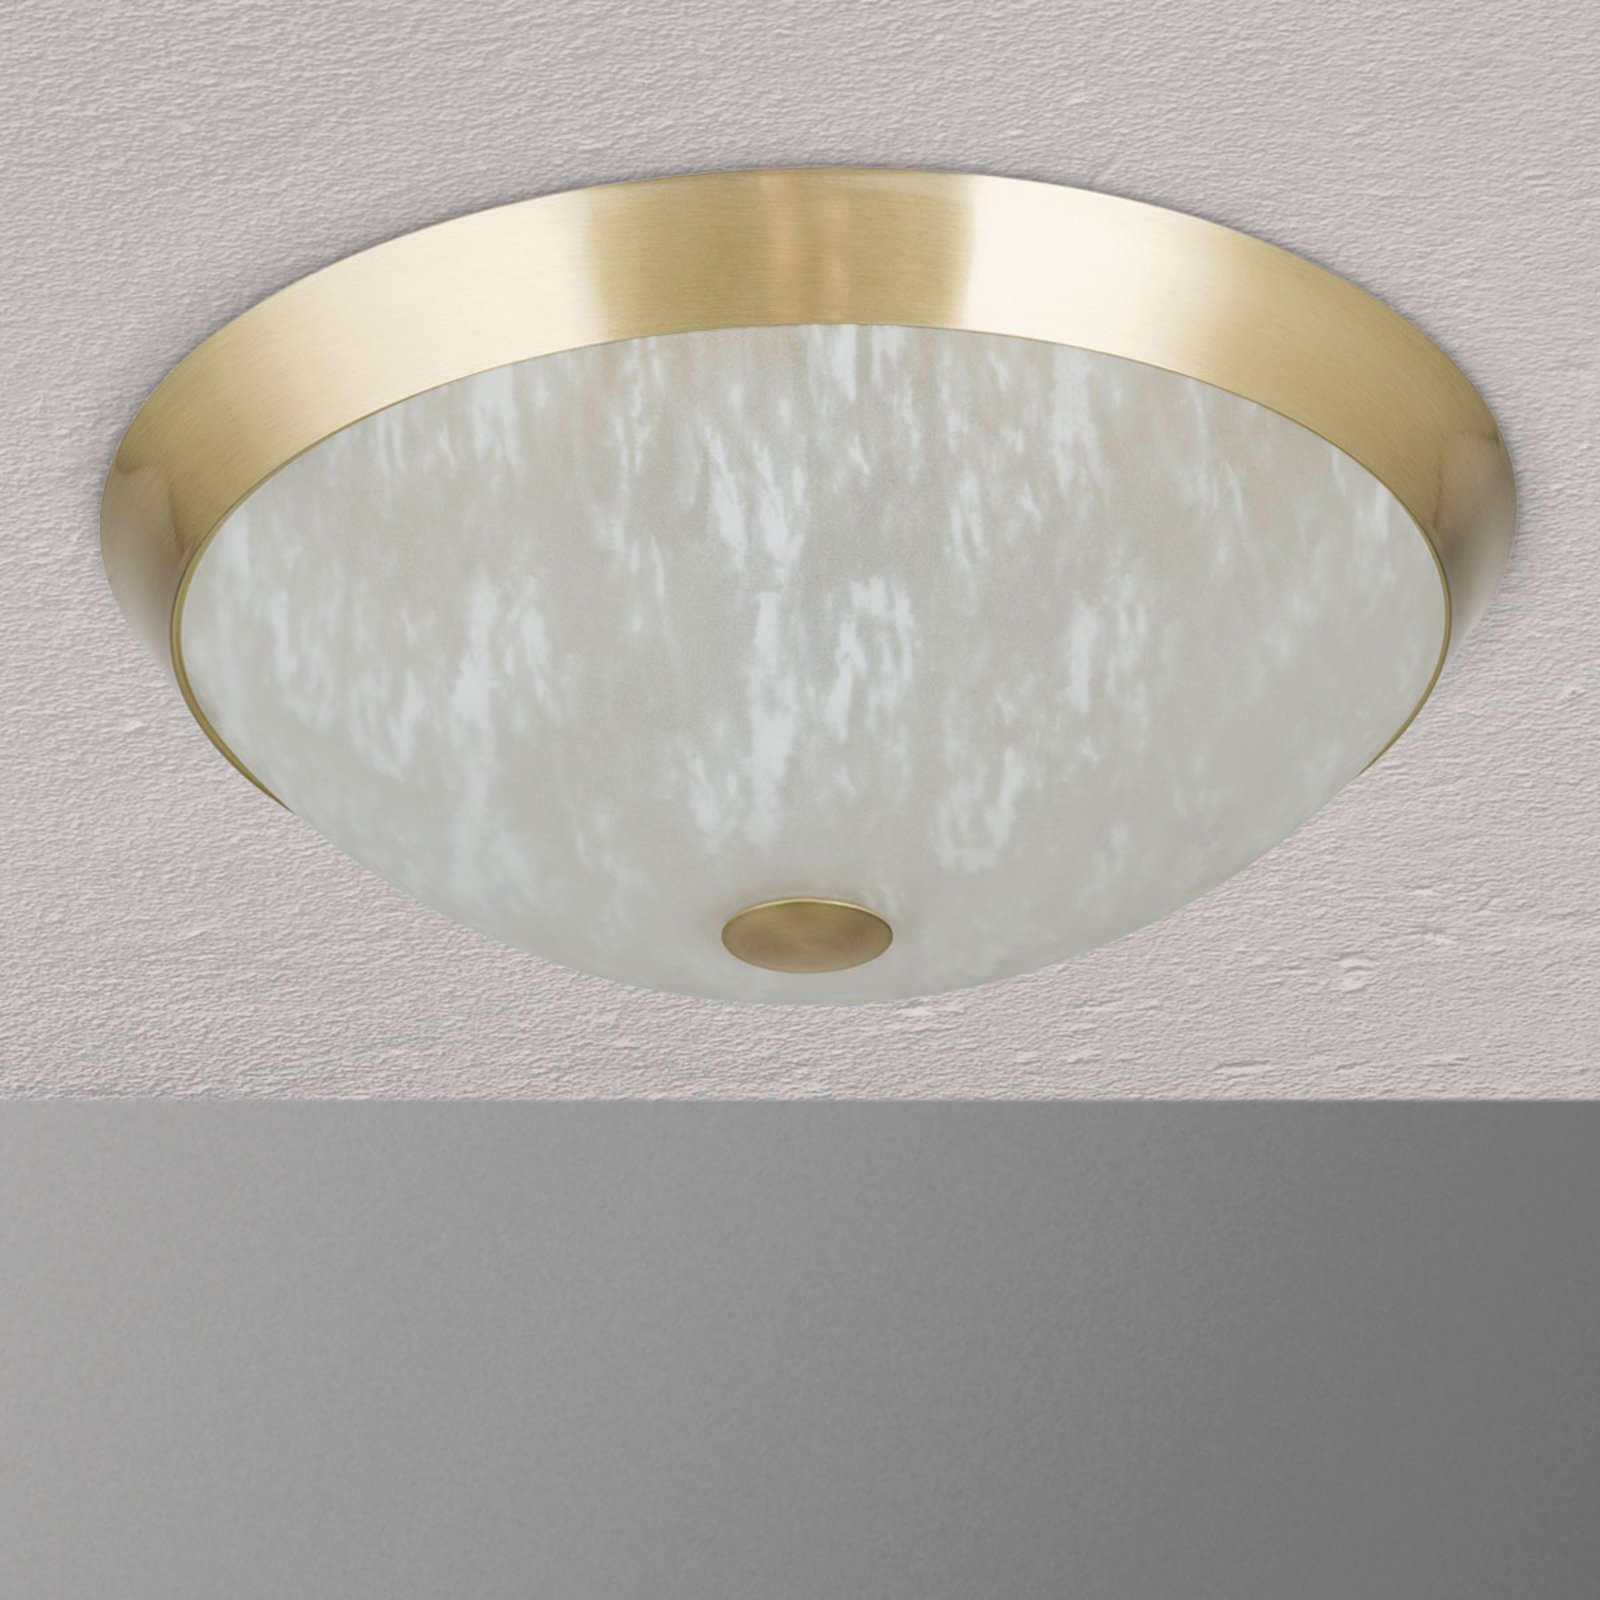 Klasična stropna svetilka Jaya s steklenim senčnikom, 42 cm